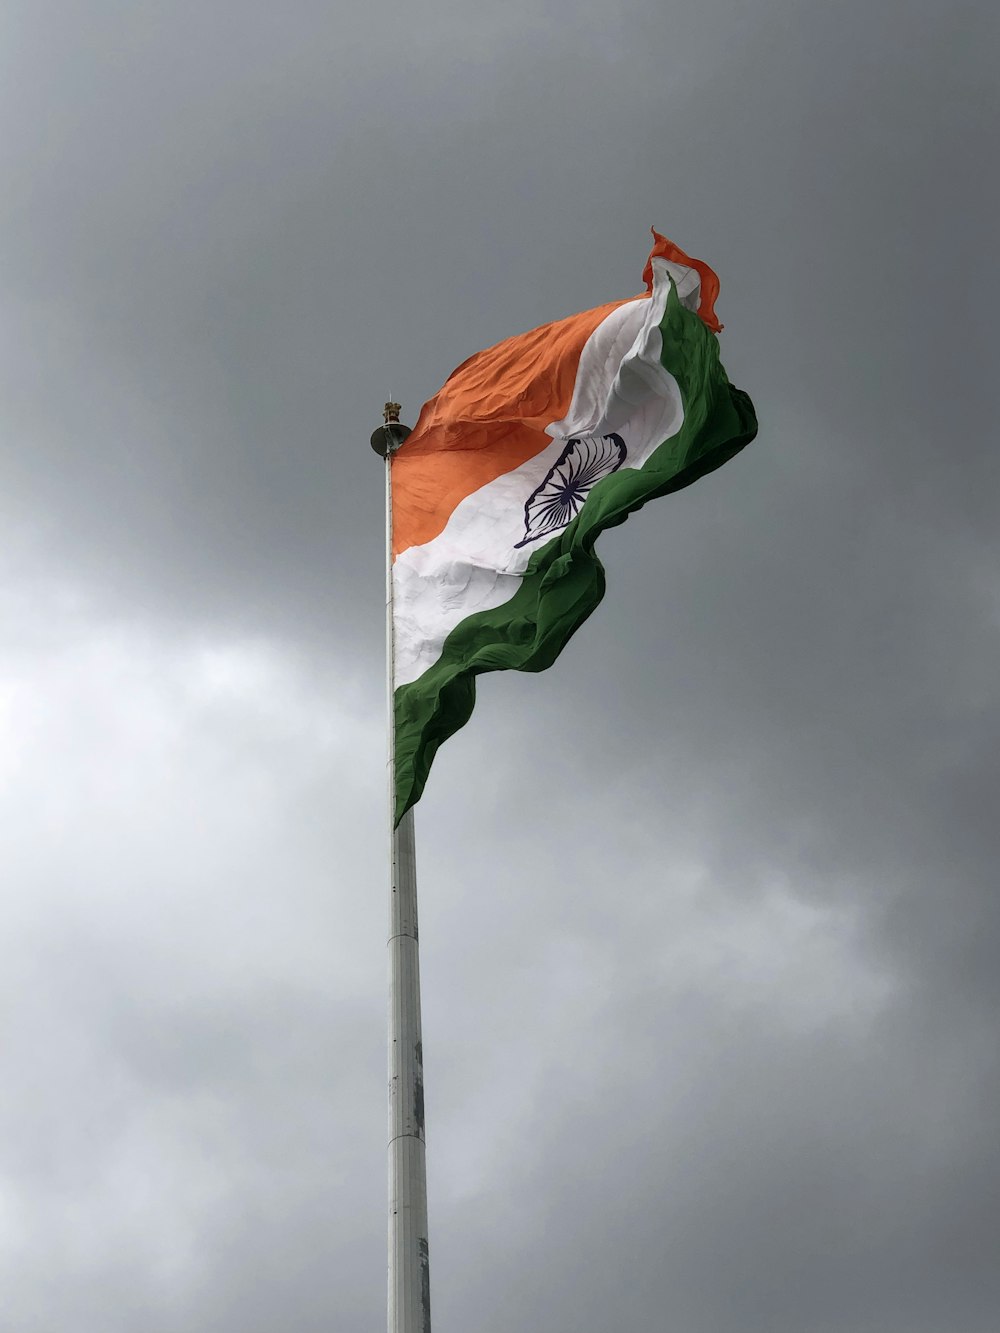 India flag photo – Free India Image on Unsplash